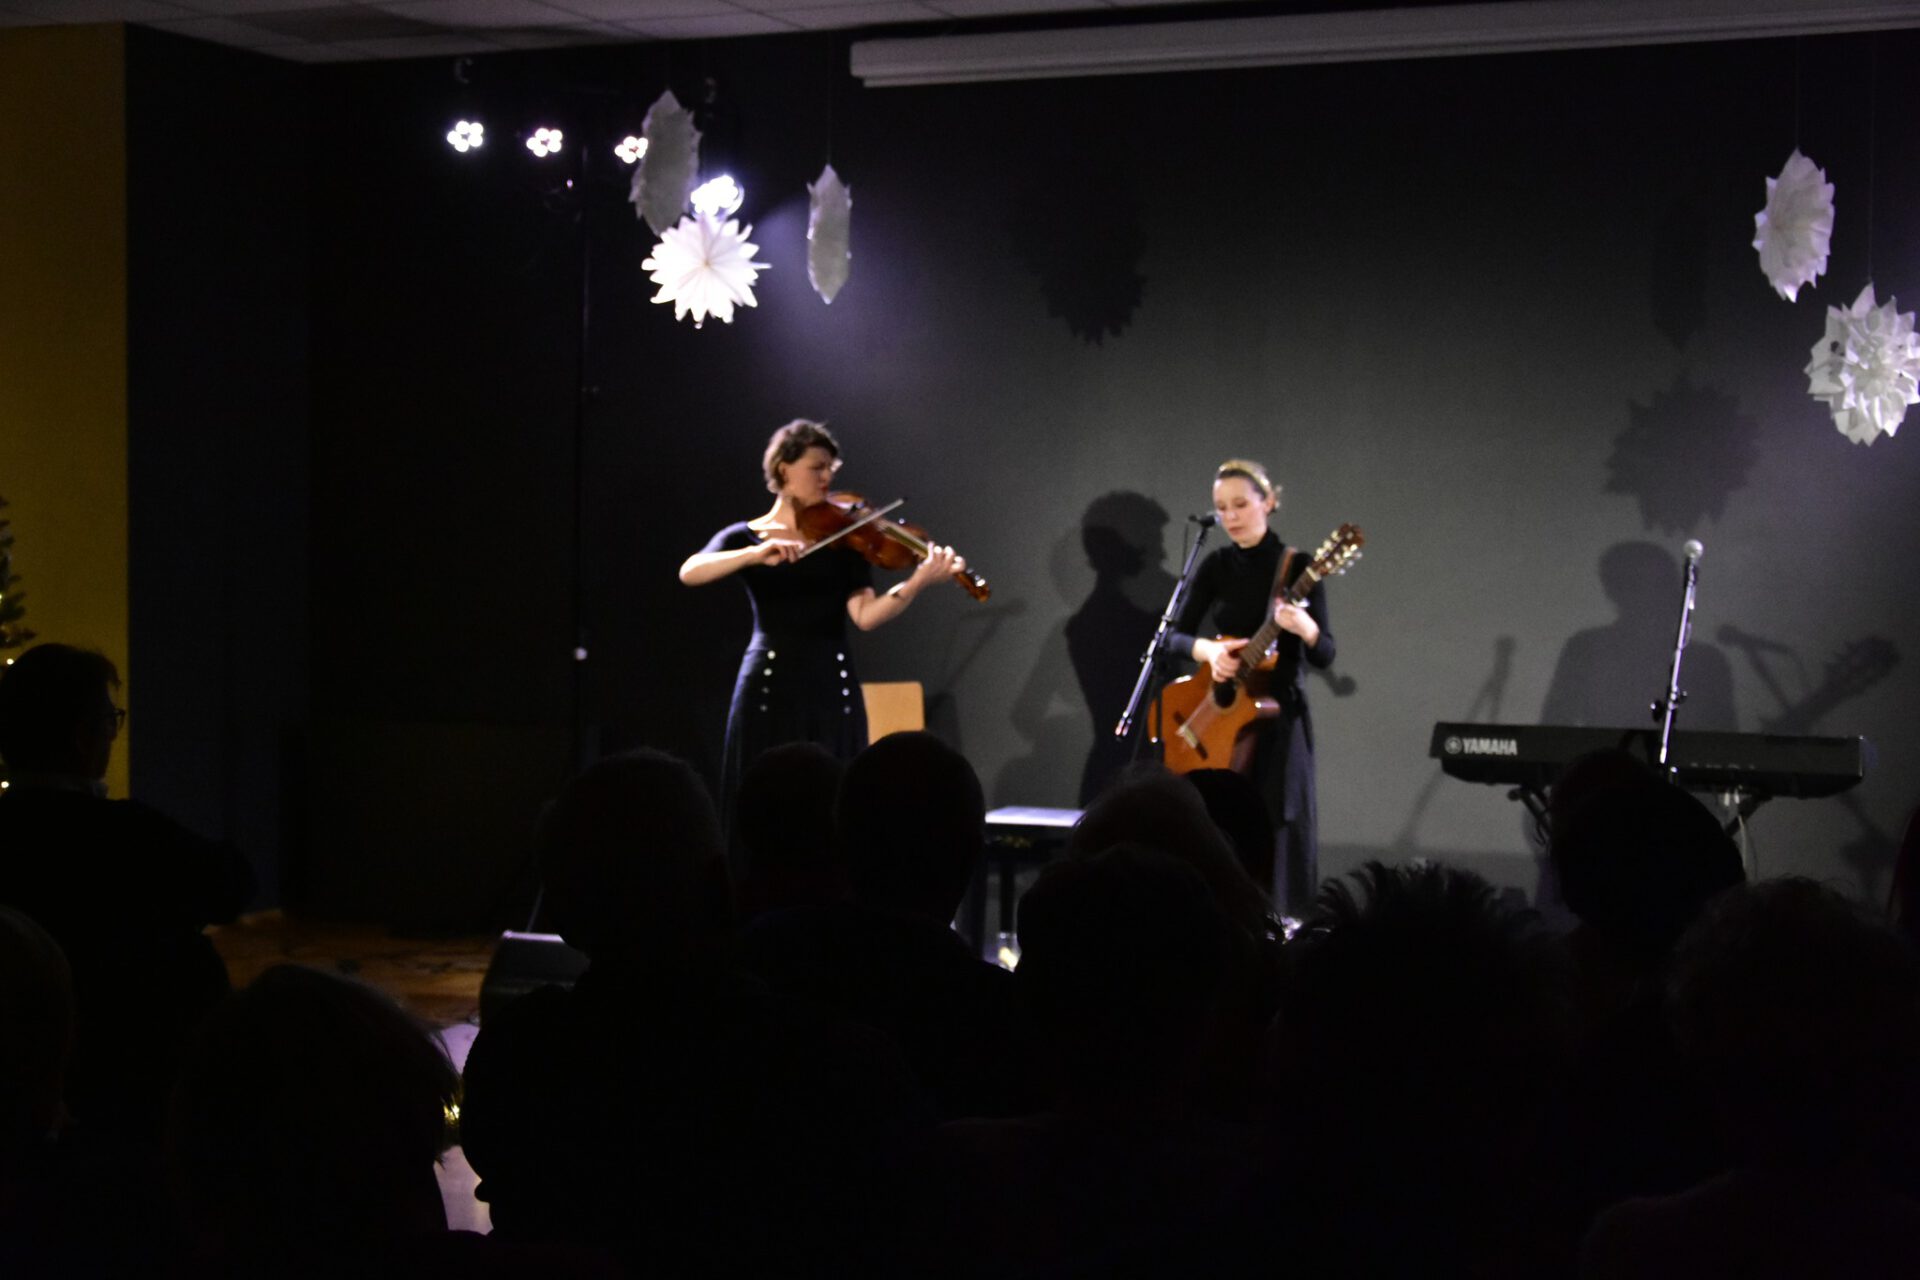 Artystki z instrumentami na scenie Zuzanna Moczek i Anna Stankiewicz